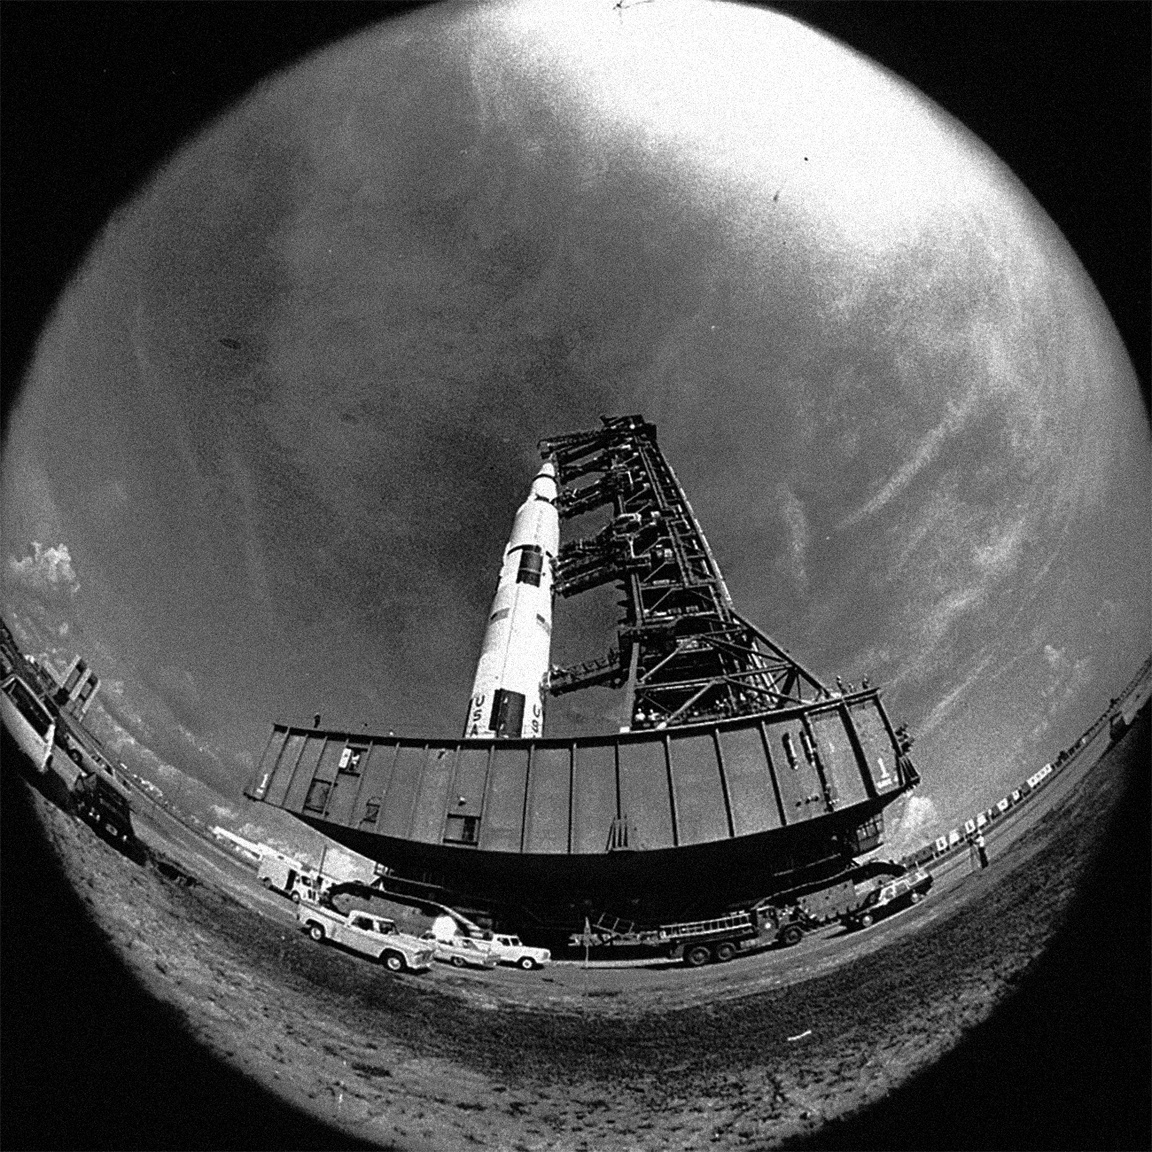 Egy nem túl gyakran látható halszemoptikával készült archív fotó, amin az Apollo-11 űrhajót láthatjuk nagyjából a filmbéli perspektívából, miközben az LC-39A startállásra cammog a hatalmas lánctalpas szállítón.